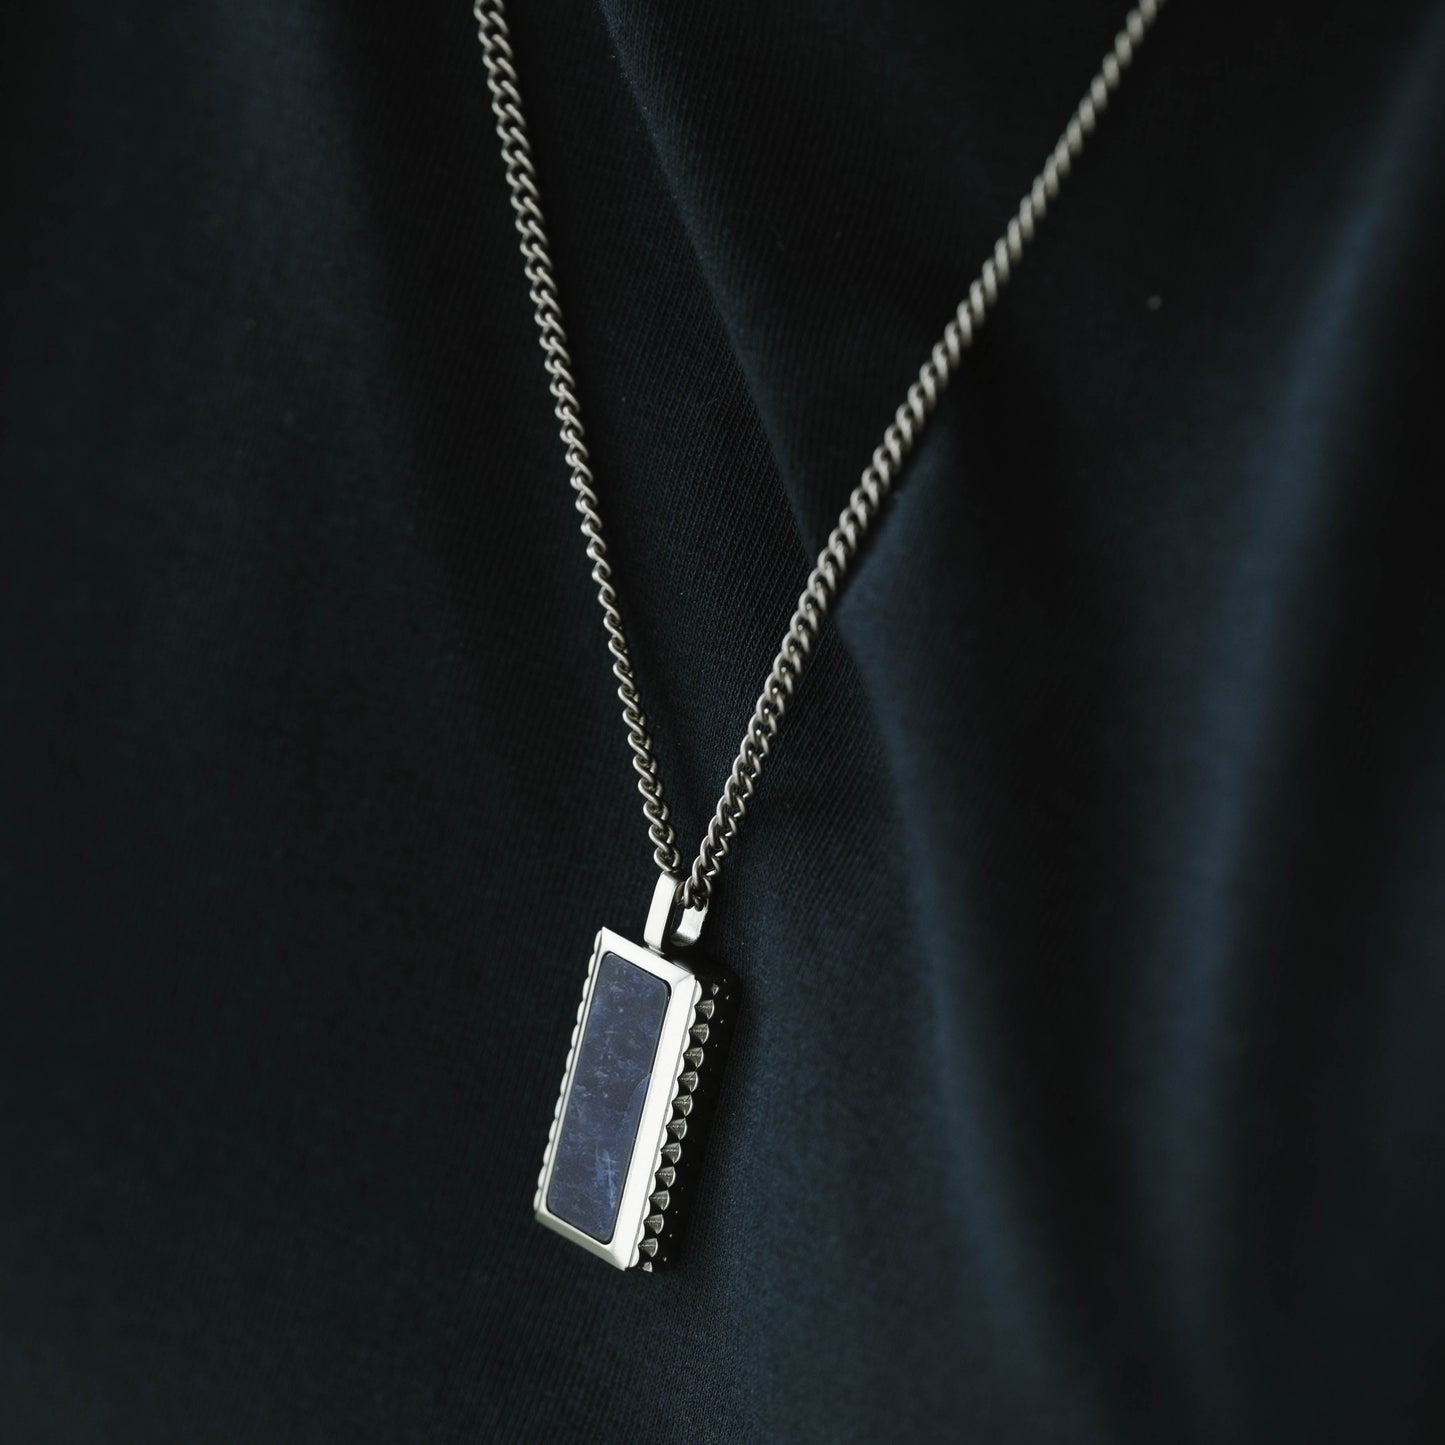 silver blue necklace chain mendant for men gemstone sodalite steel and barnett stainless steel Hatton Gemstone Necklace Silver/Sodalite Adjustable 60-70cm/24-28'